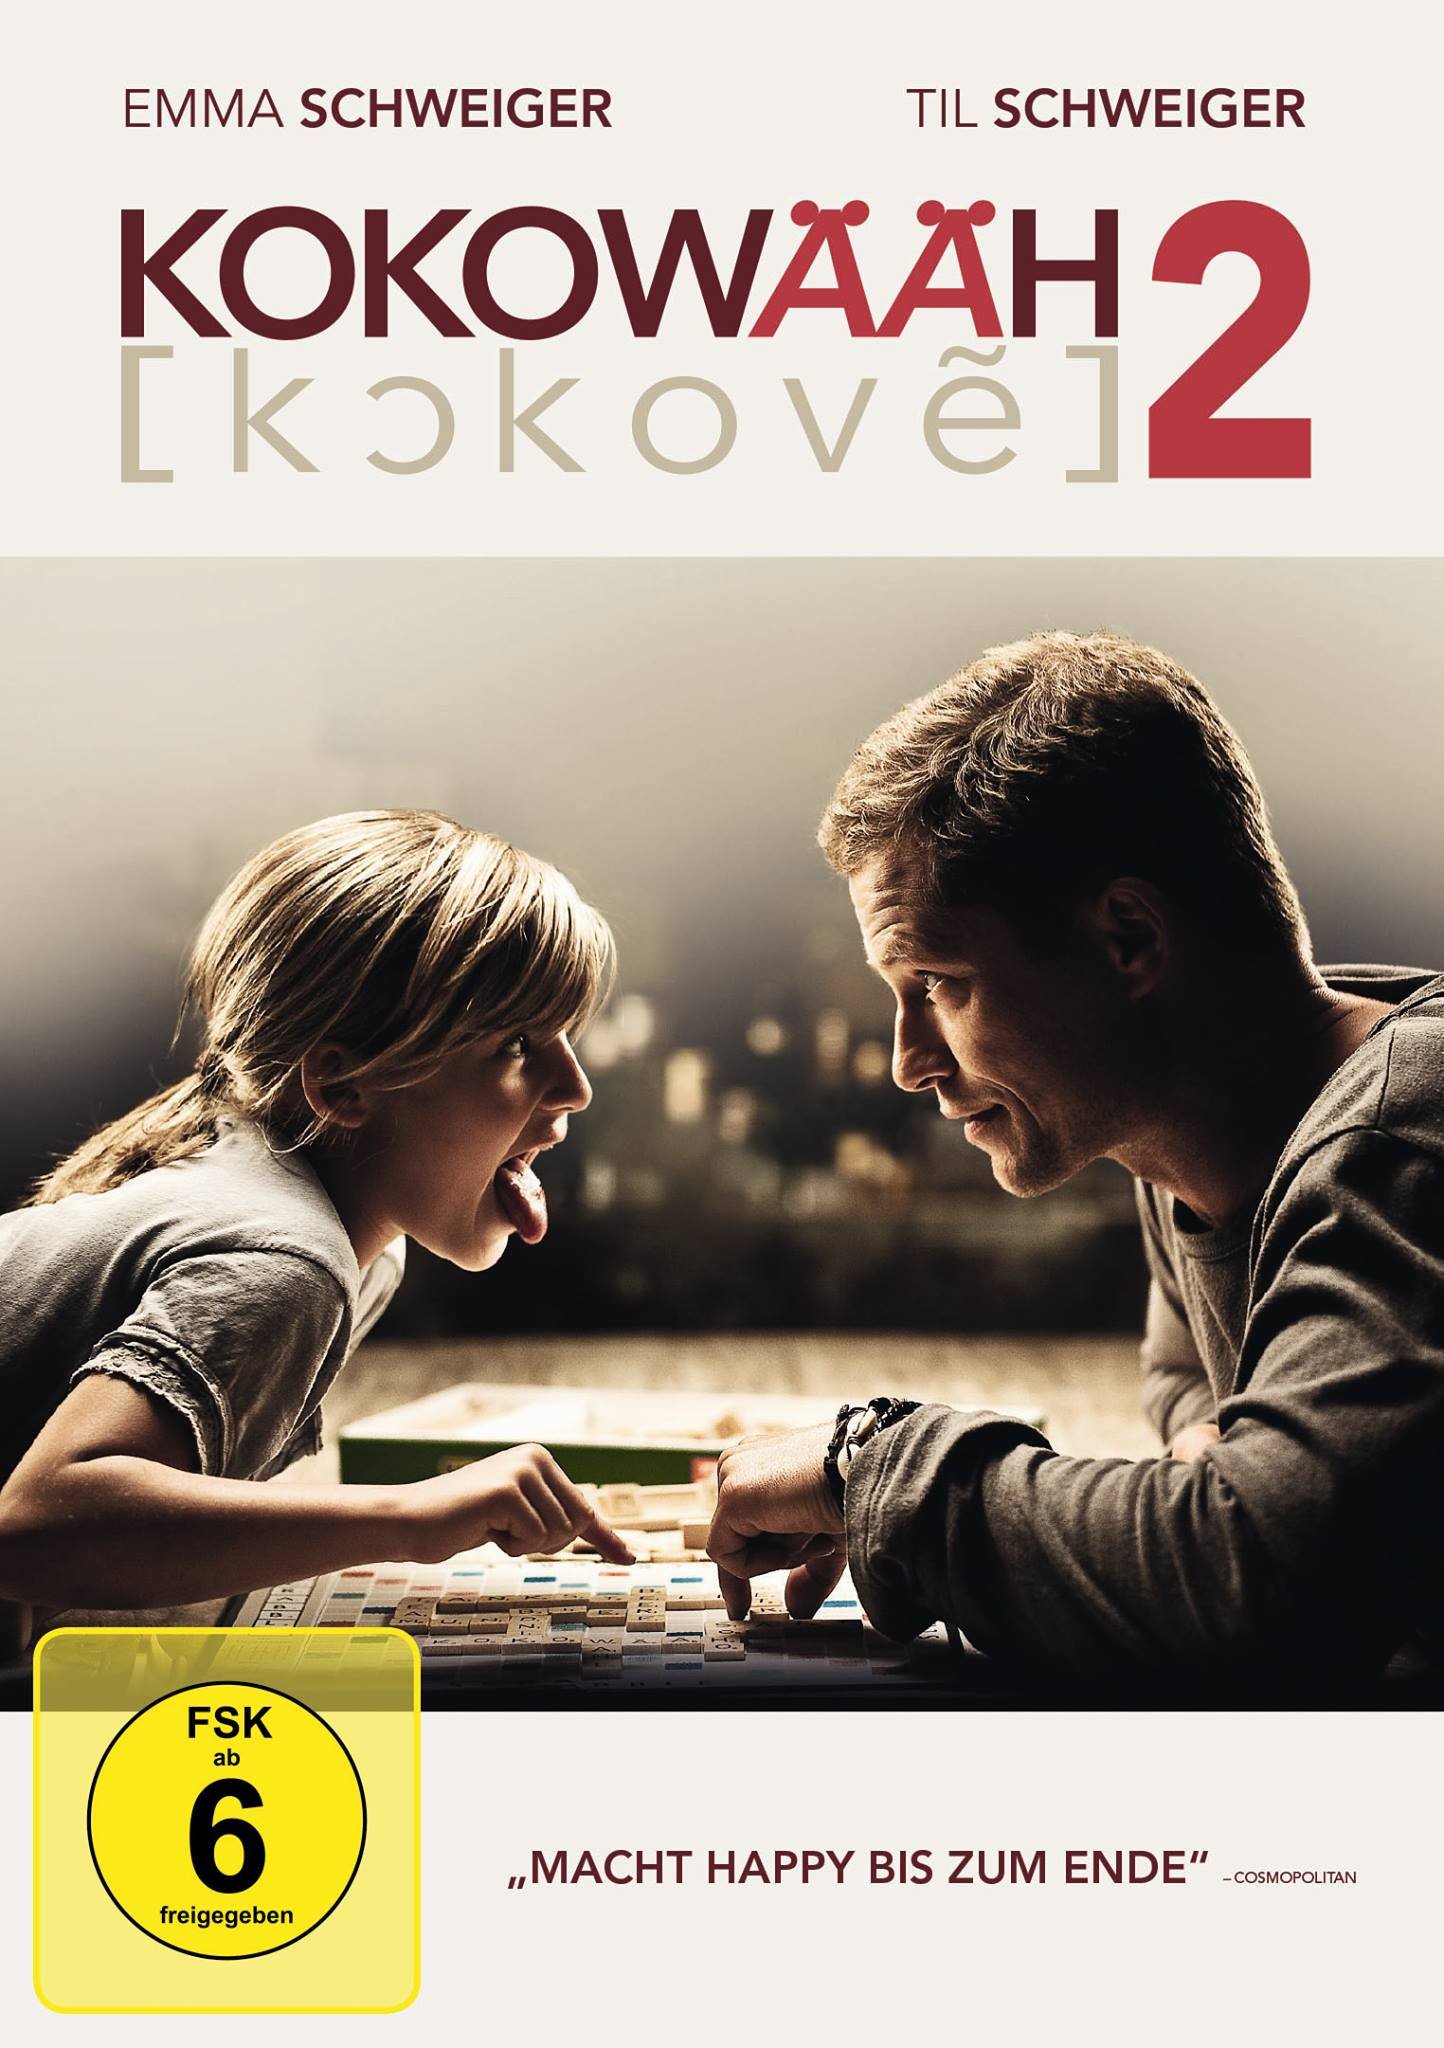 L'affiche originale du film Kokowääh 2 en allemand